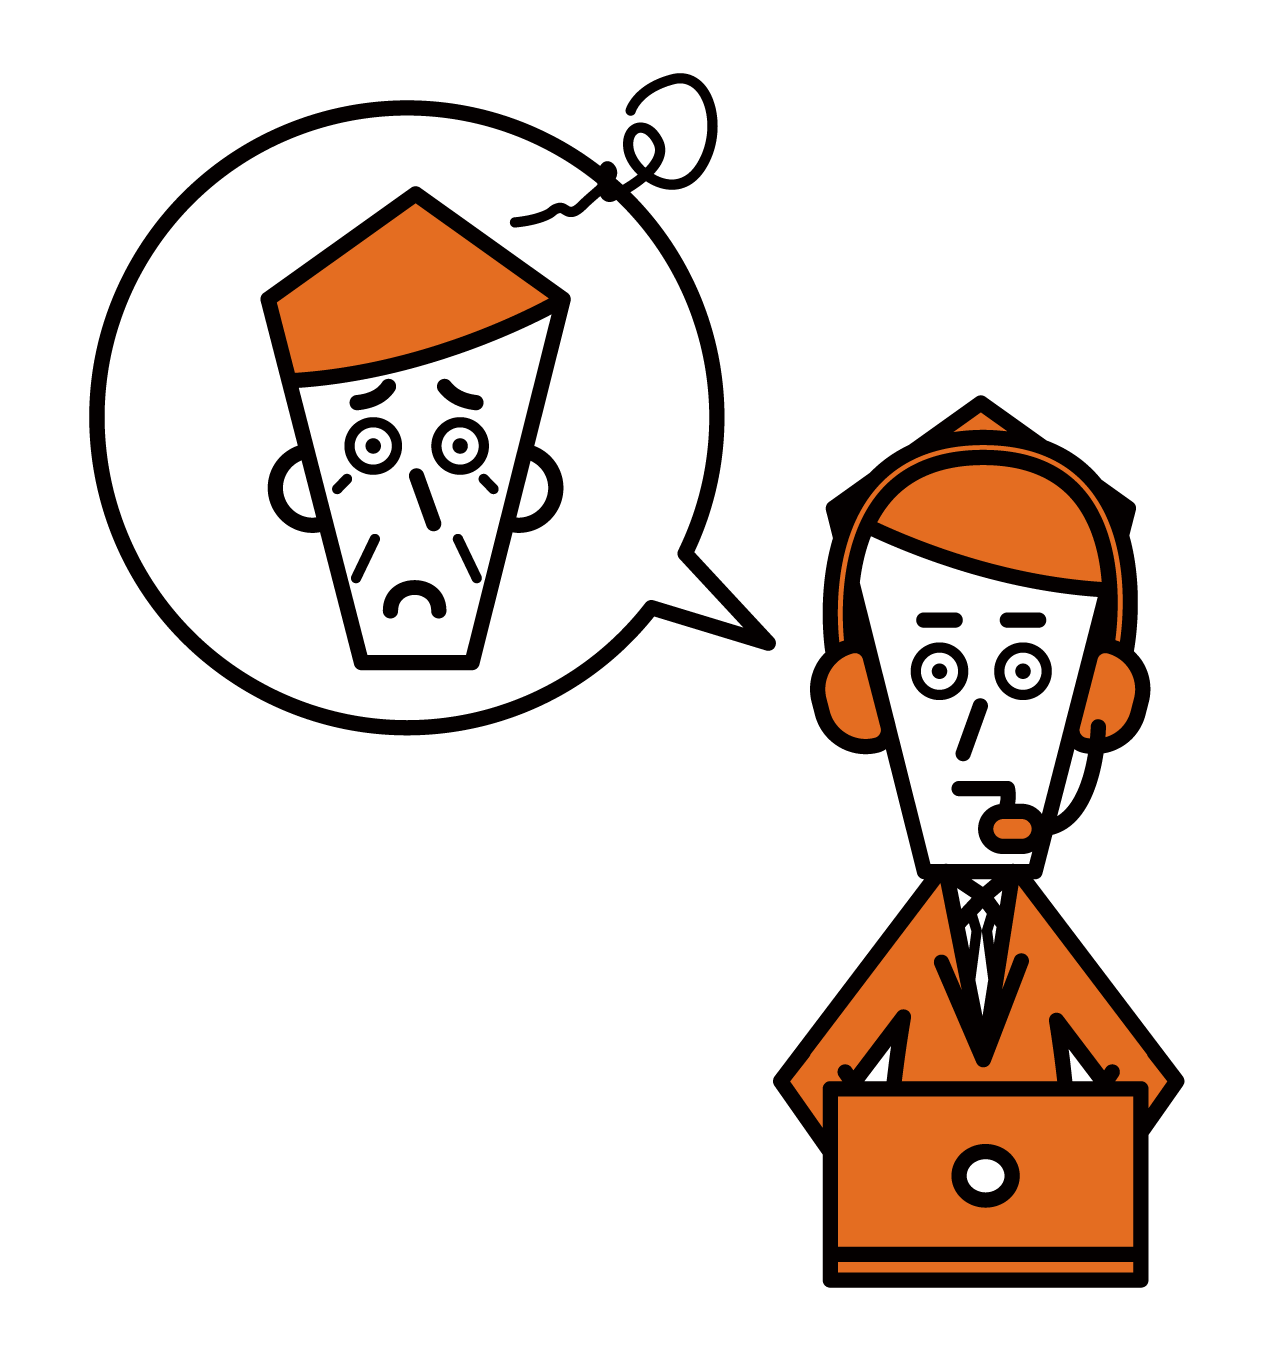 客戶支援電話接線員呼叫中心（男性）的插圖，提供禮貌的建議